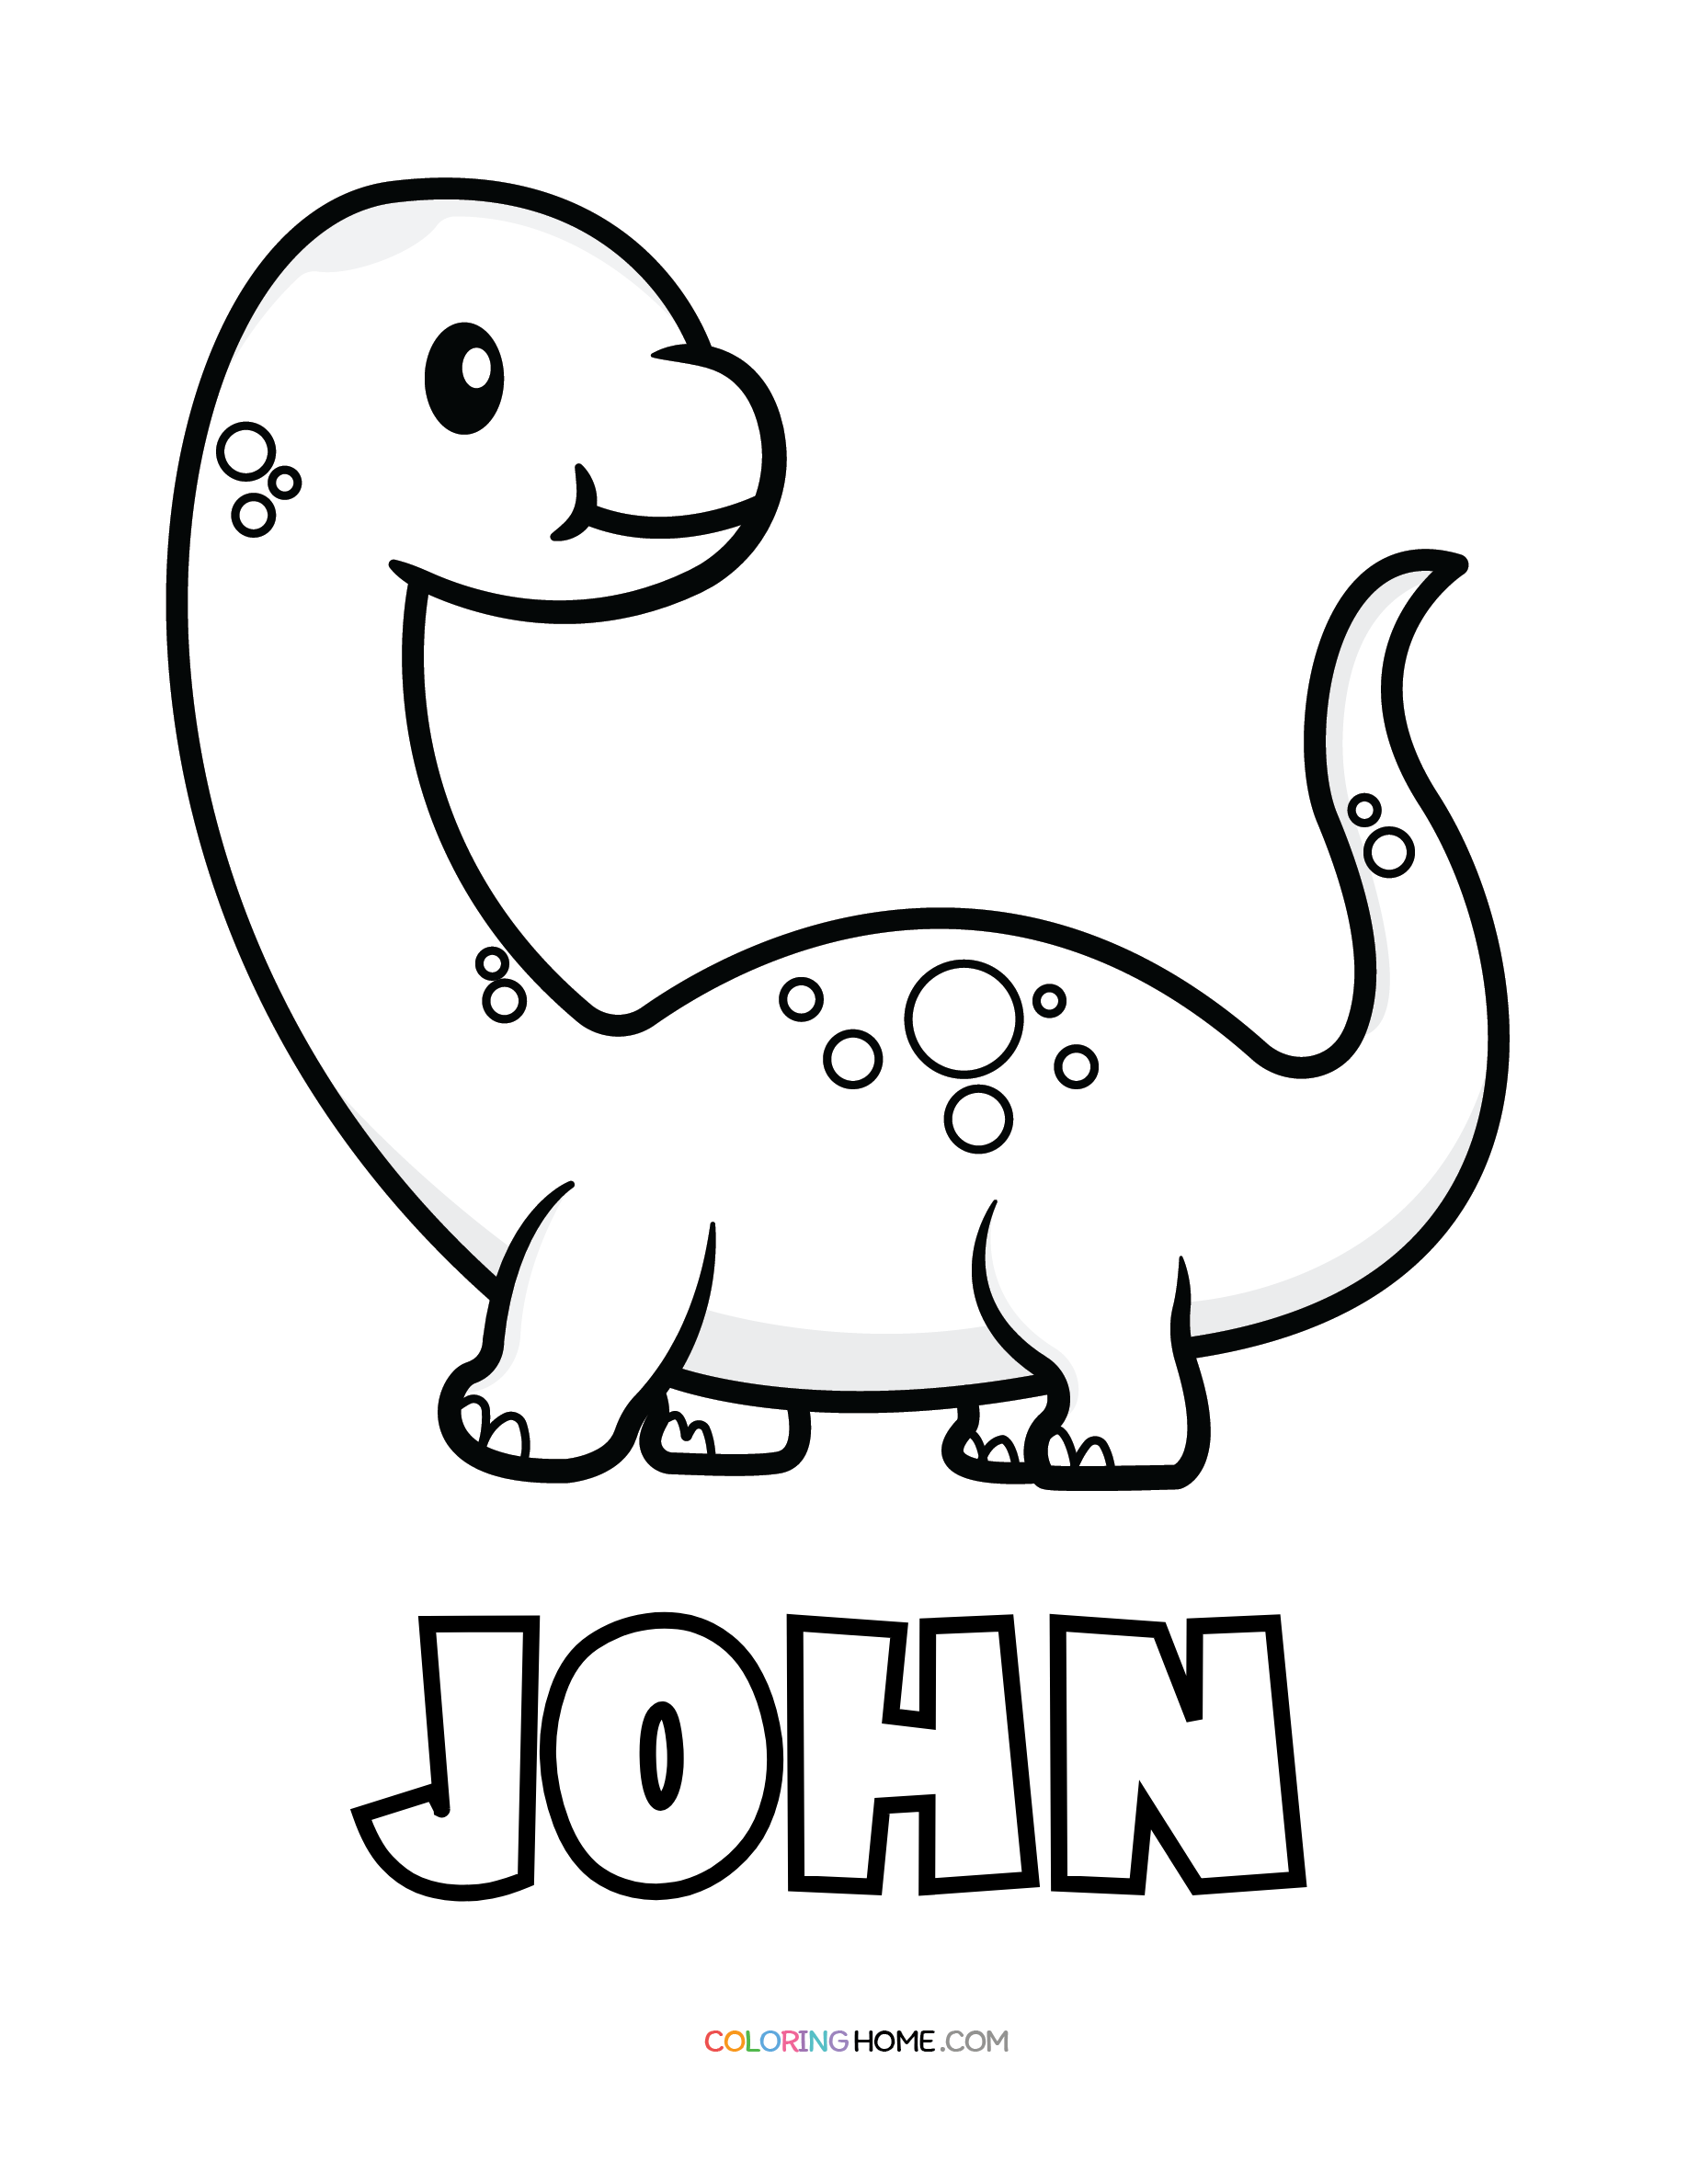 John dinosaur coloring page